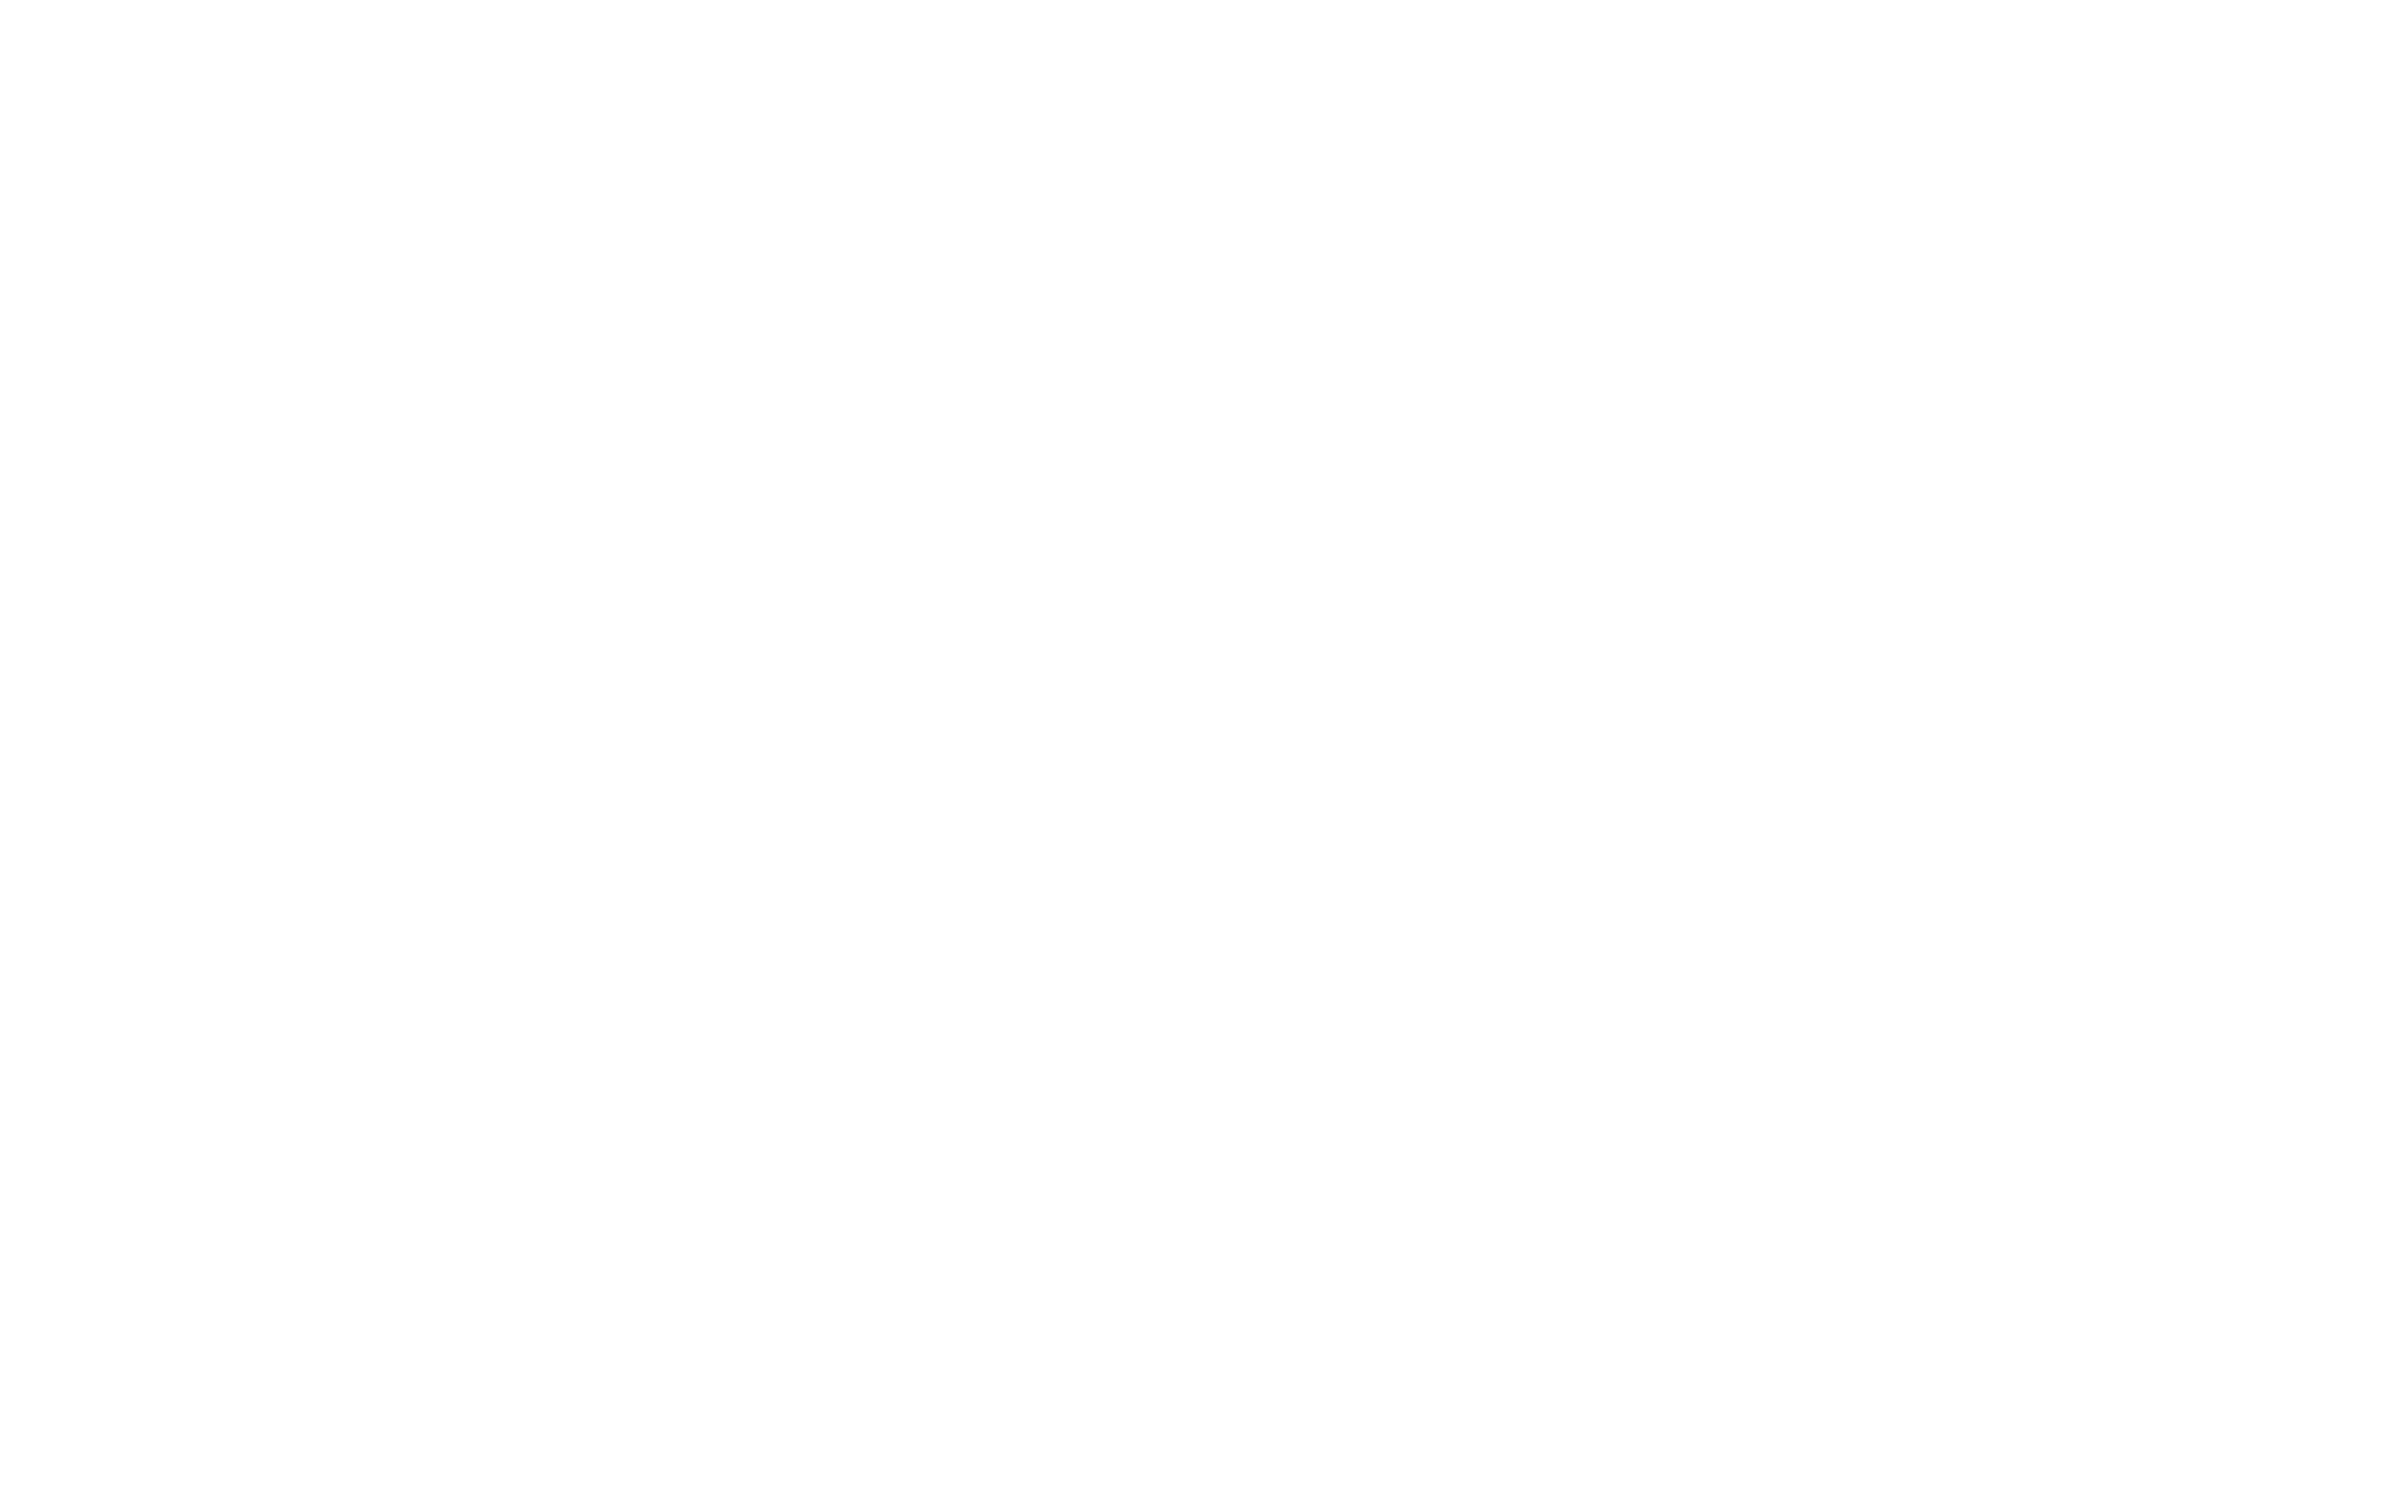 Florida Everglades Collection